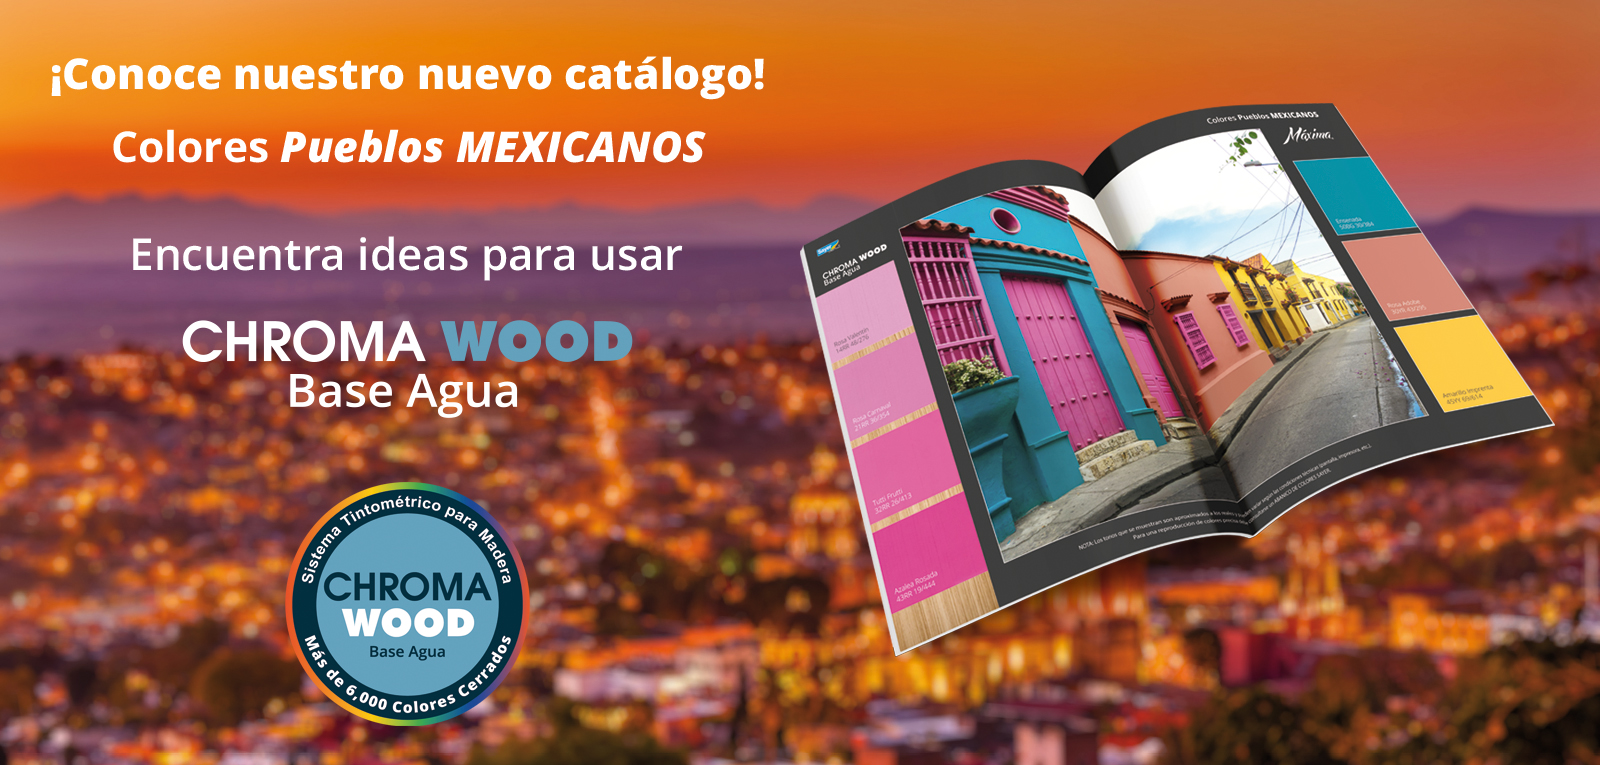 Slide Catalogo Colores Pueblos Mexicanos copy